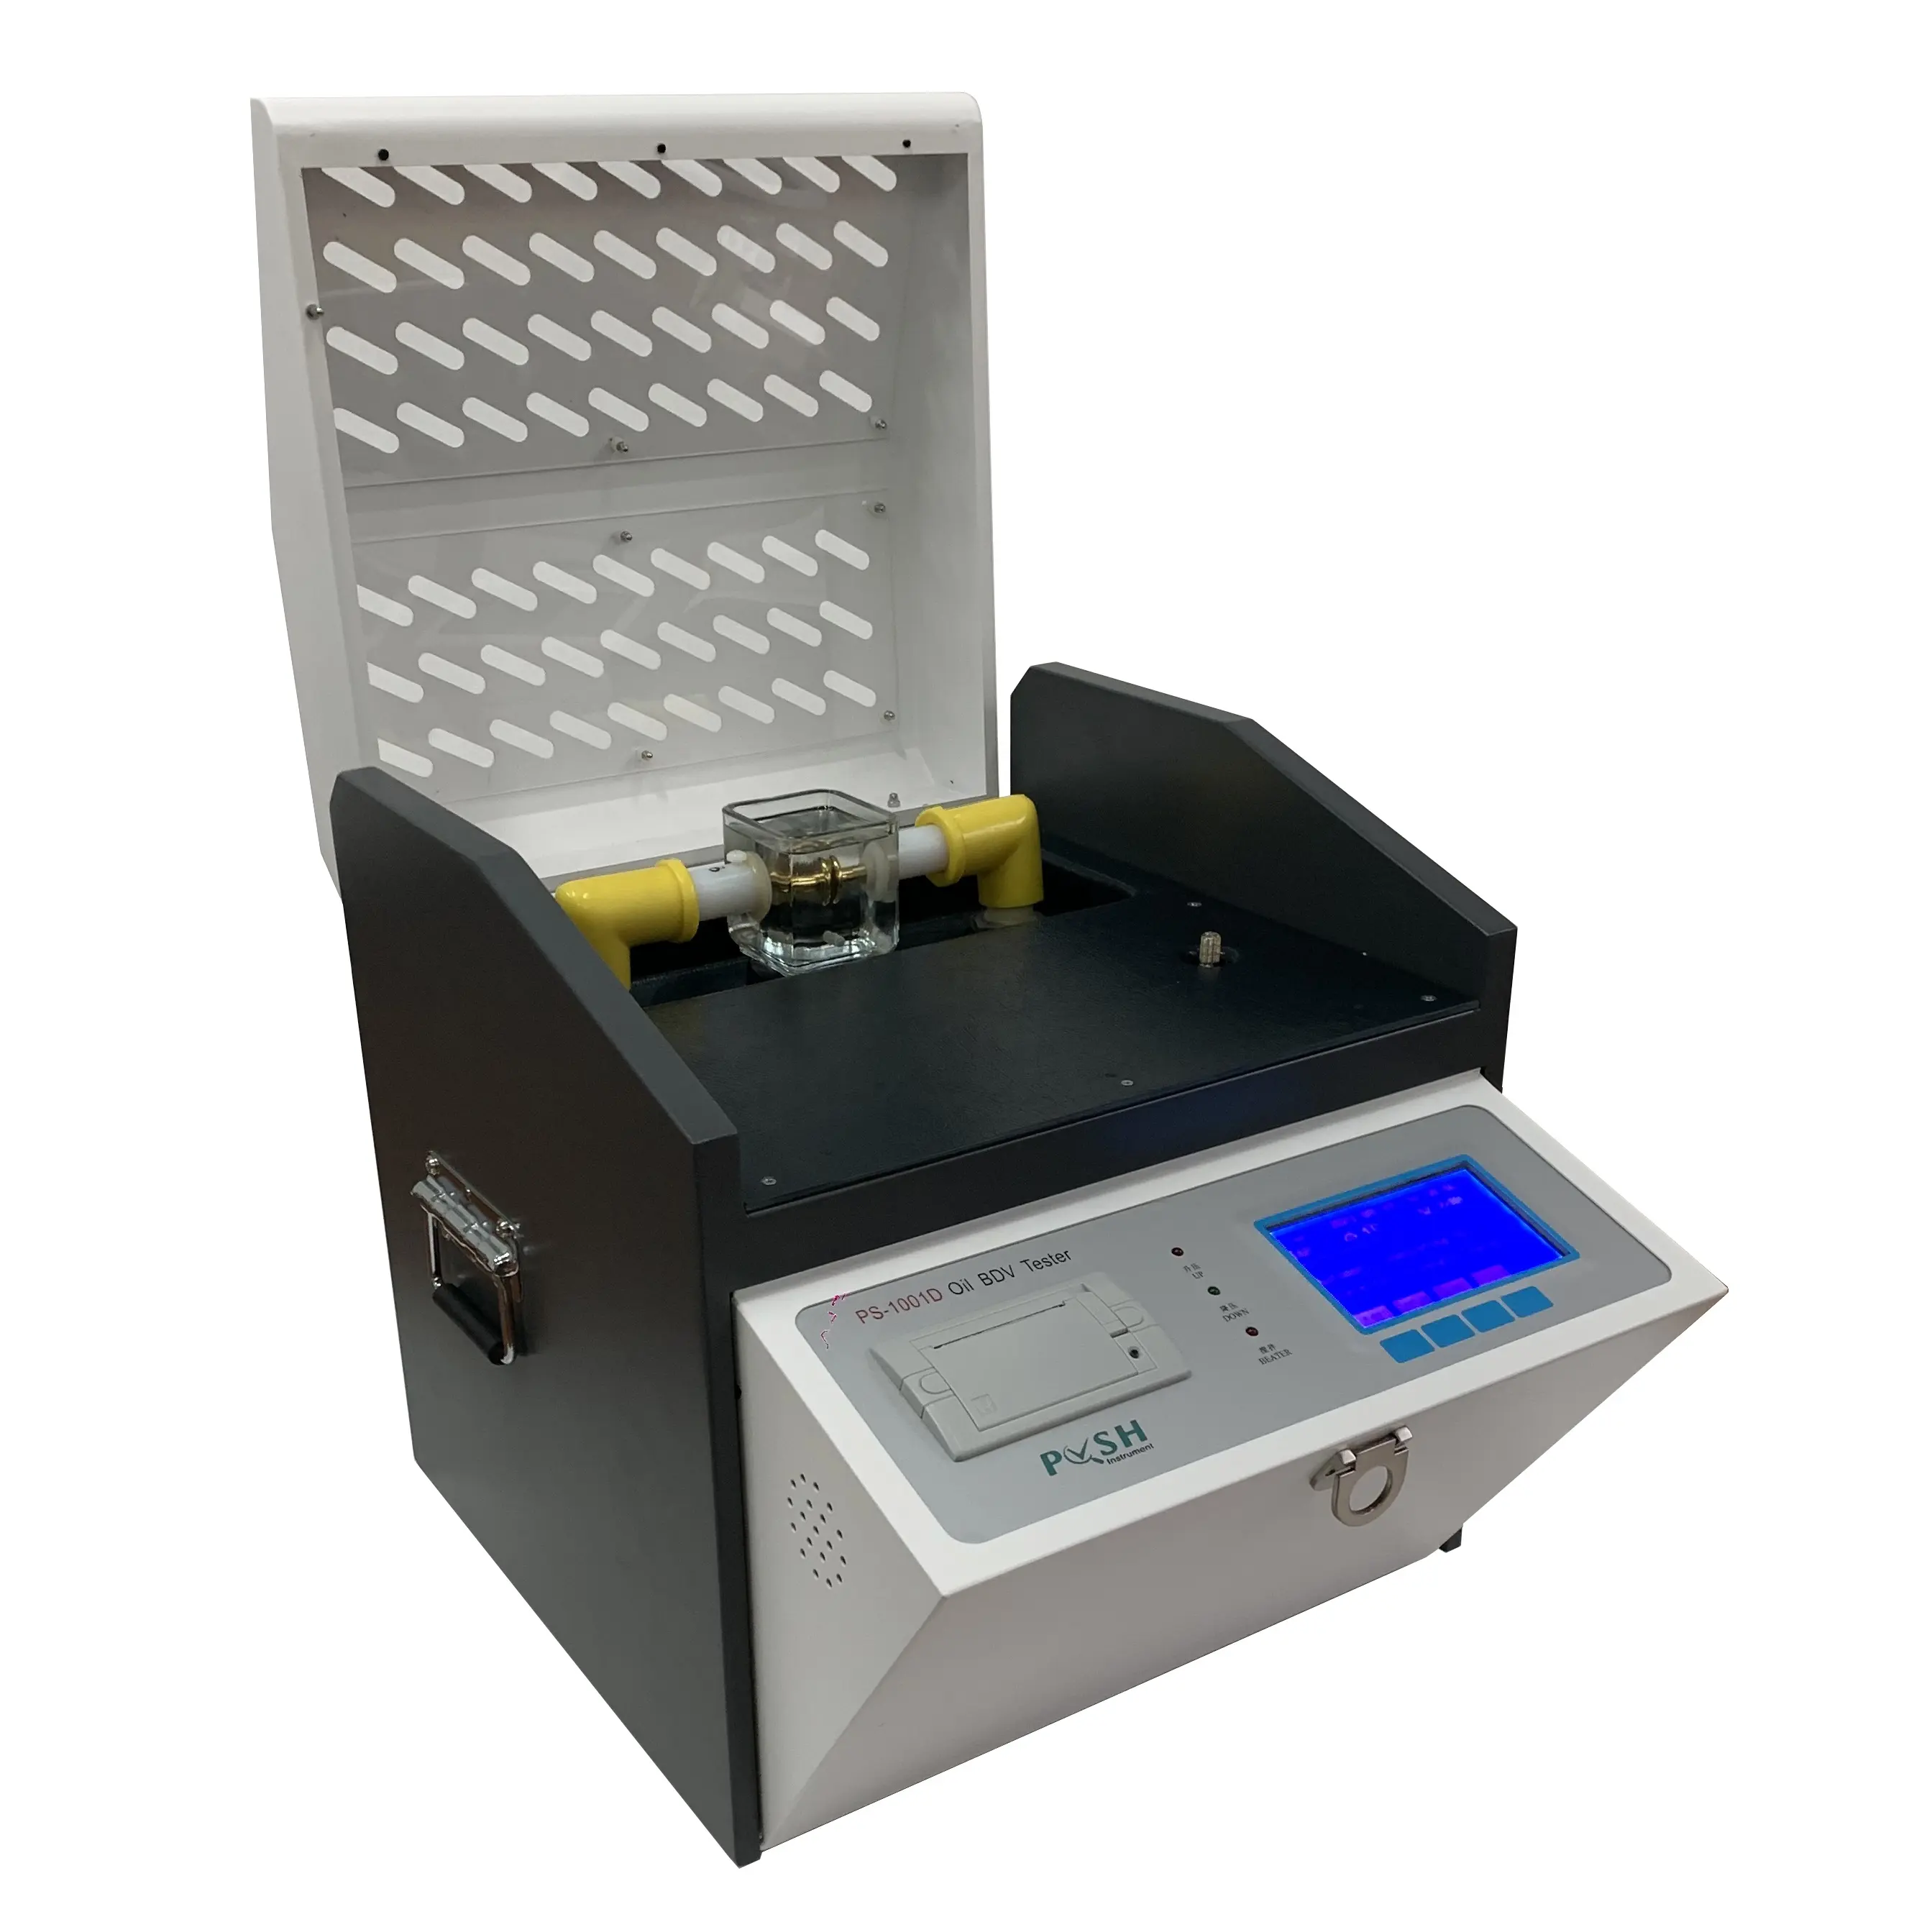 Boling — Instrument de Test électrique, Push-up, mesure automatique, transformateur, huile, dispositif d'analyse BDV